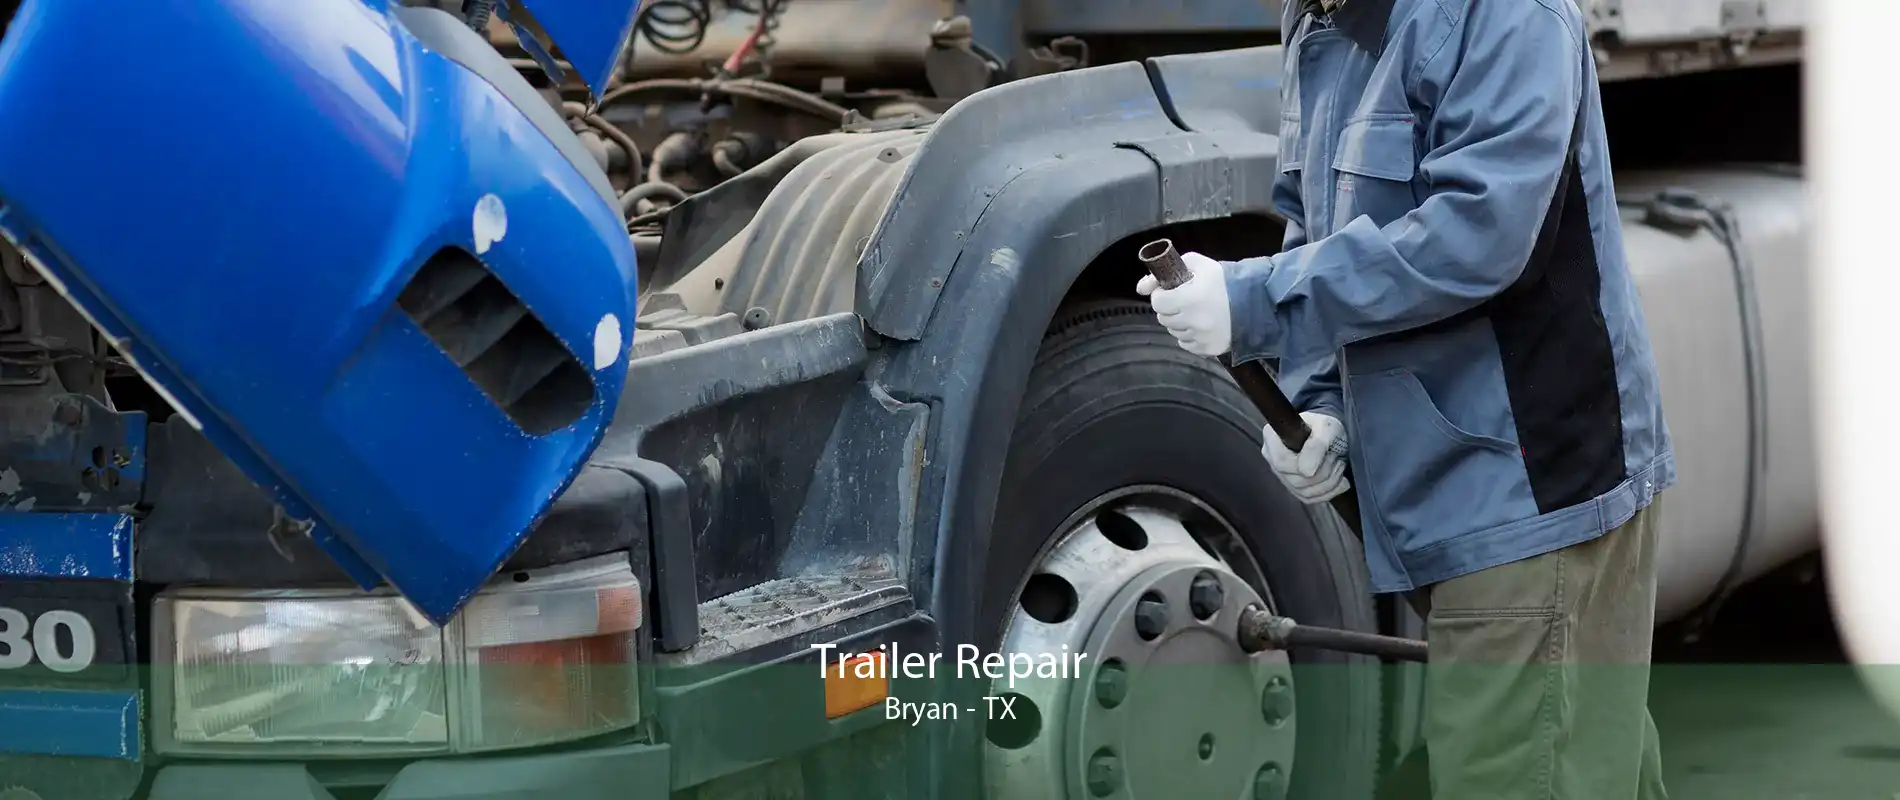 Trailer Repair Bryan - TX